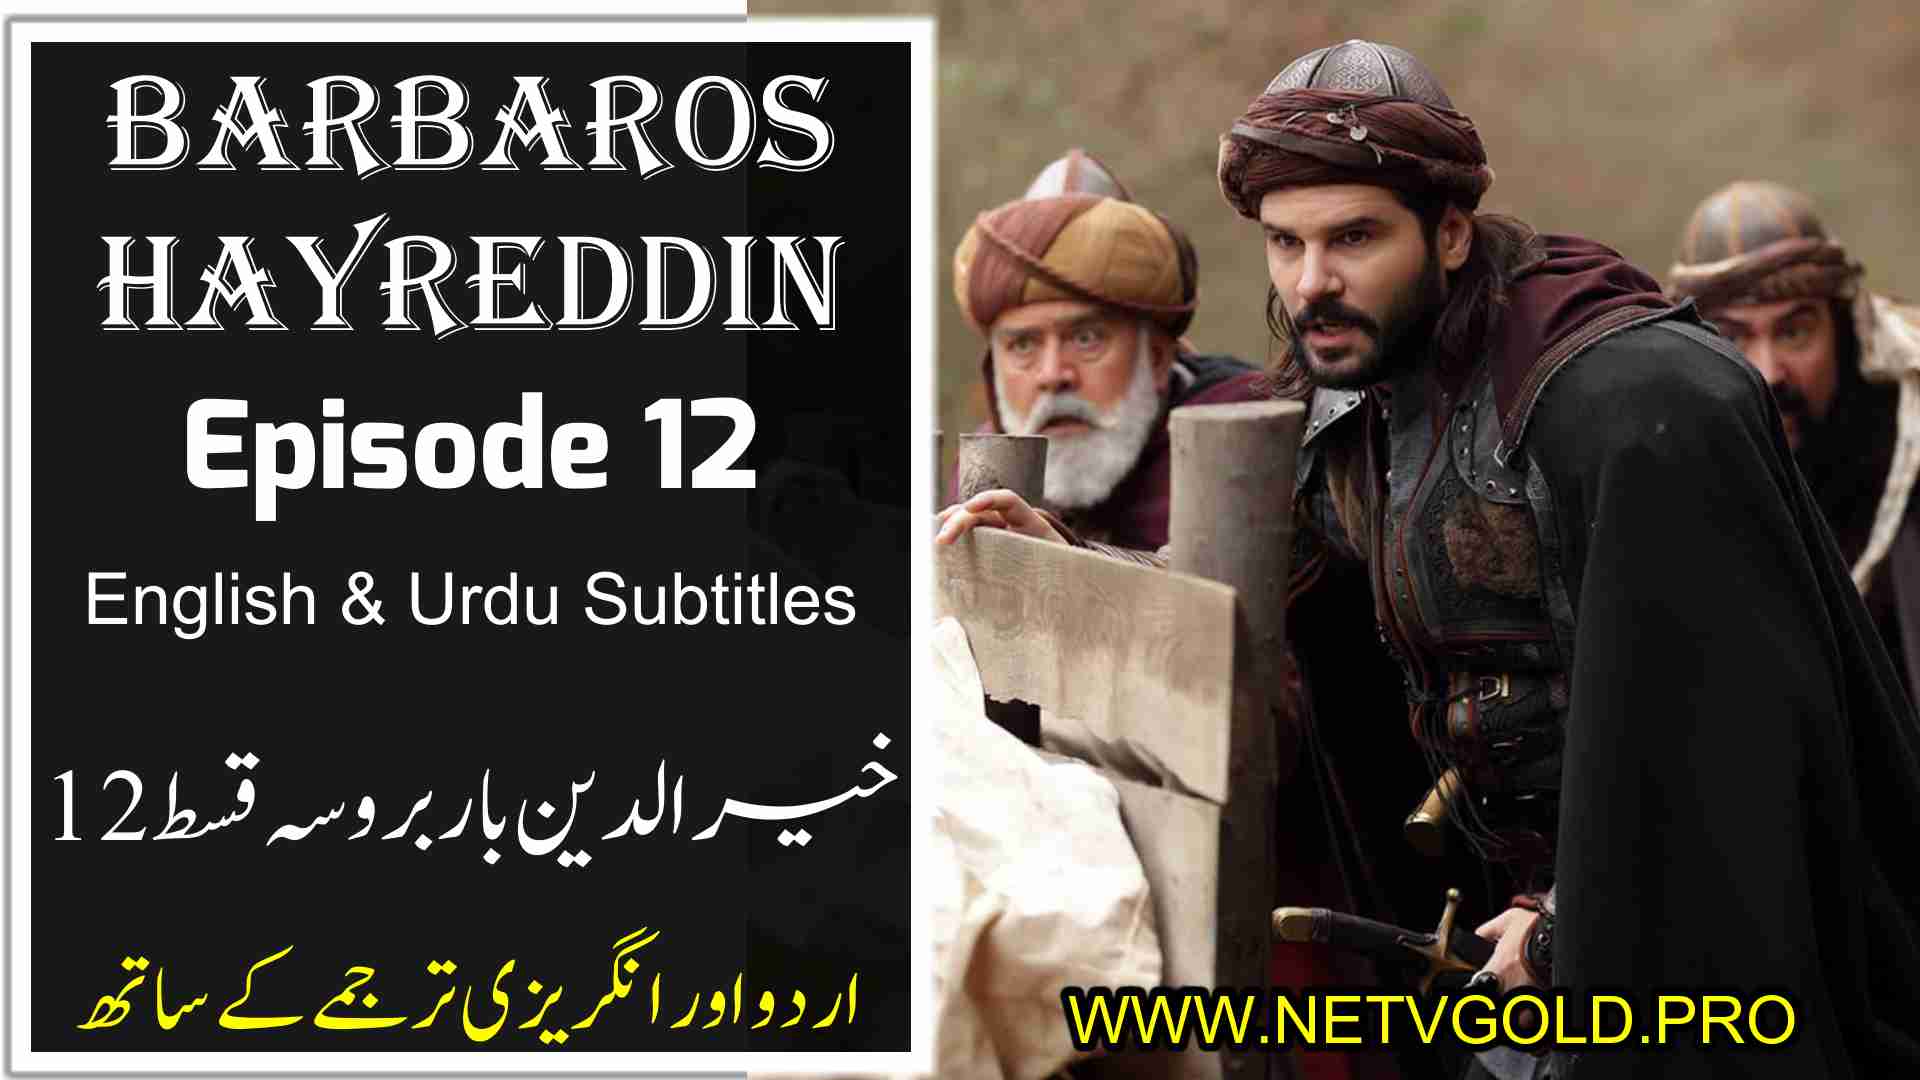 Barbaros Hayreddin Episode 12 with Urdu & English Subtitles